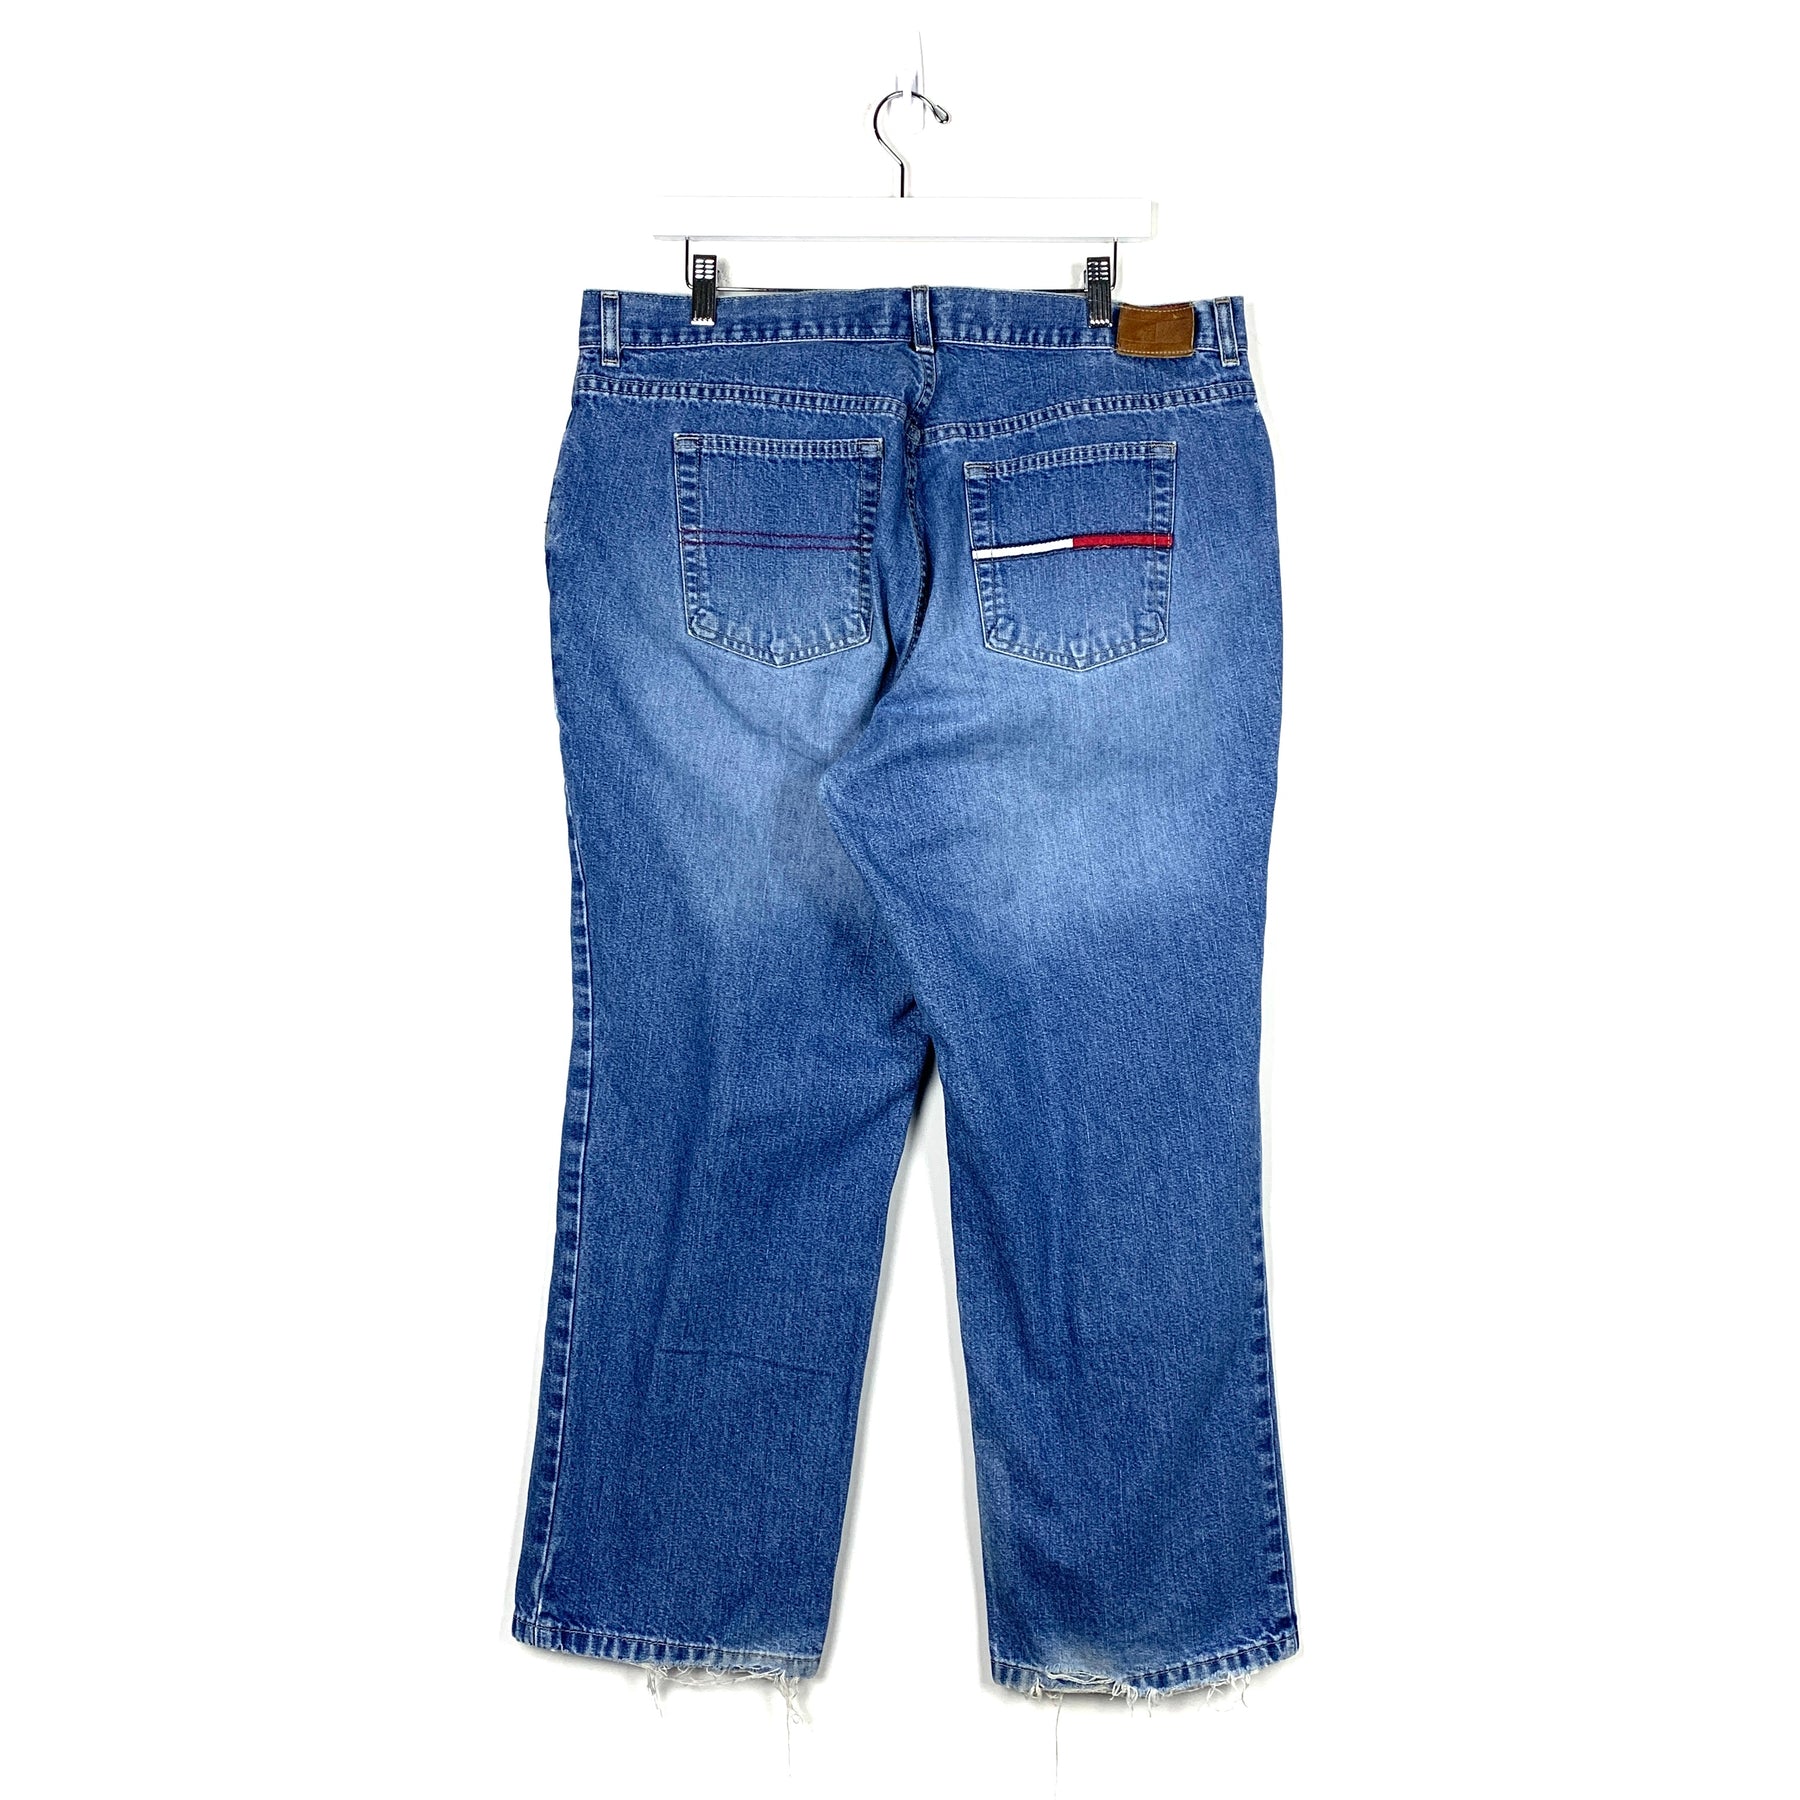 Vintage Tommy Hilfiger Jeans - Men's 36/30